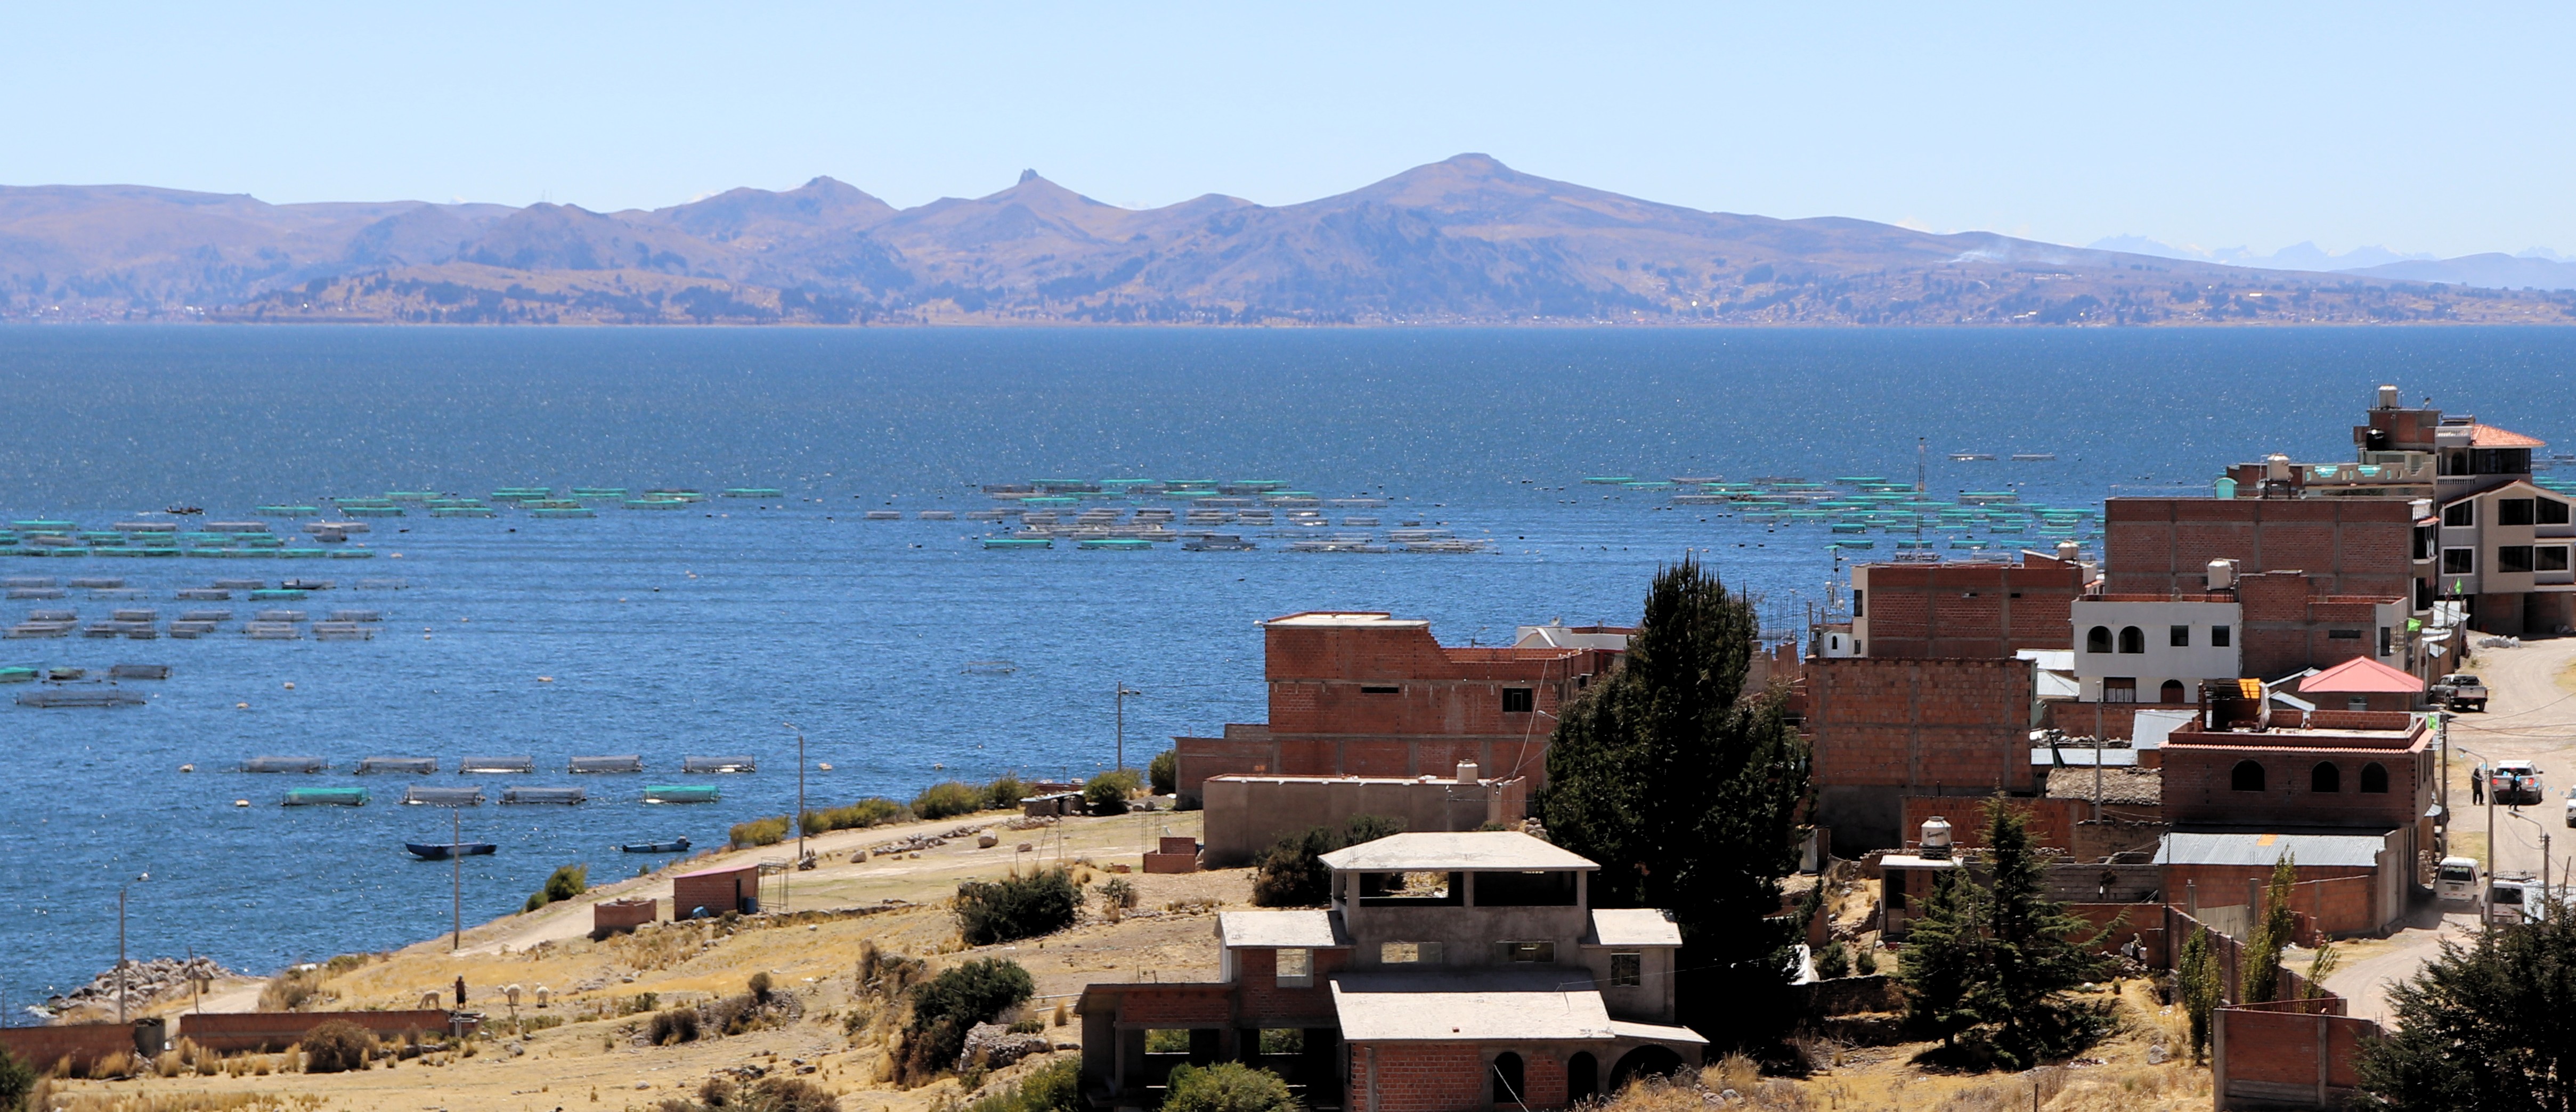 Travesía Achumani - Cusco, piscicultura y pueblo Huerta Huaraya en el lago Titicaca.